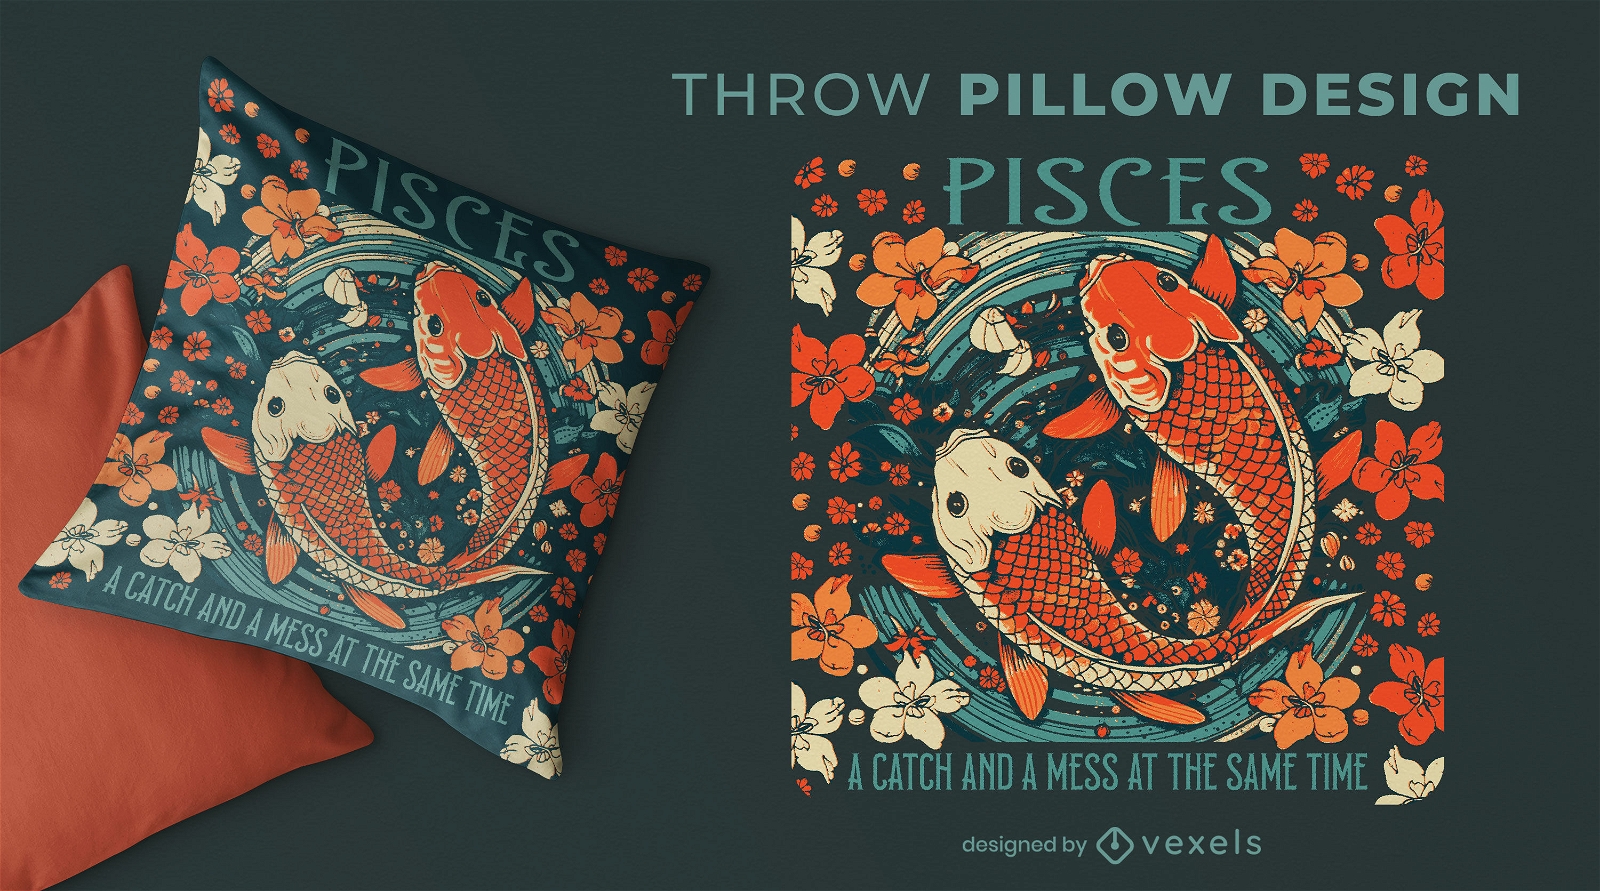 Diseño de almohada con temática de Piscis.